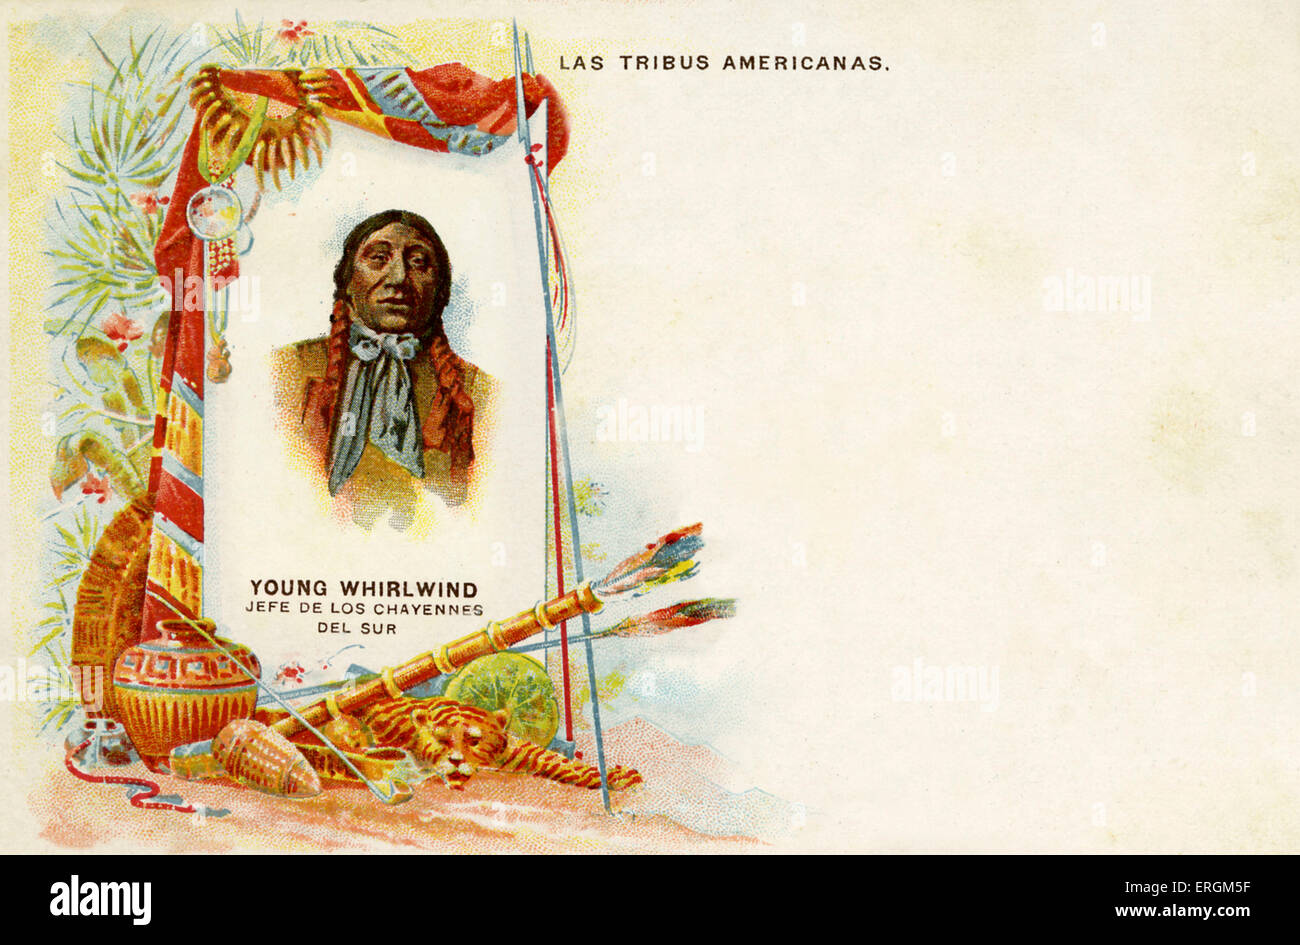 "Joven jefe Torbellino', Jefe de Chayanne, ilustración en un lienzo, junto a varios objetos nativos americanos idealizada: un fármaco, una olla, pieles, flechas y lanzas. Foto de stock